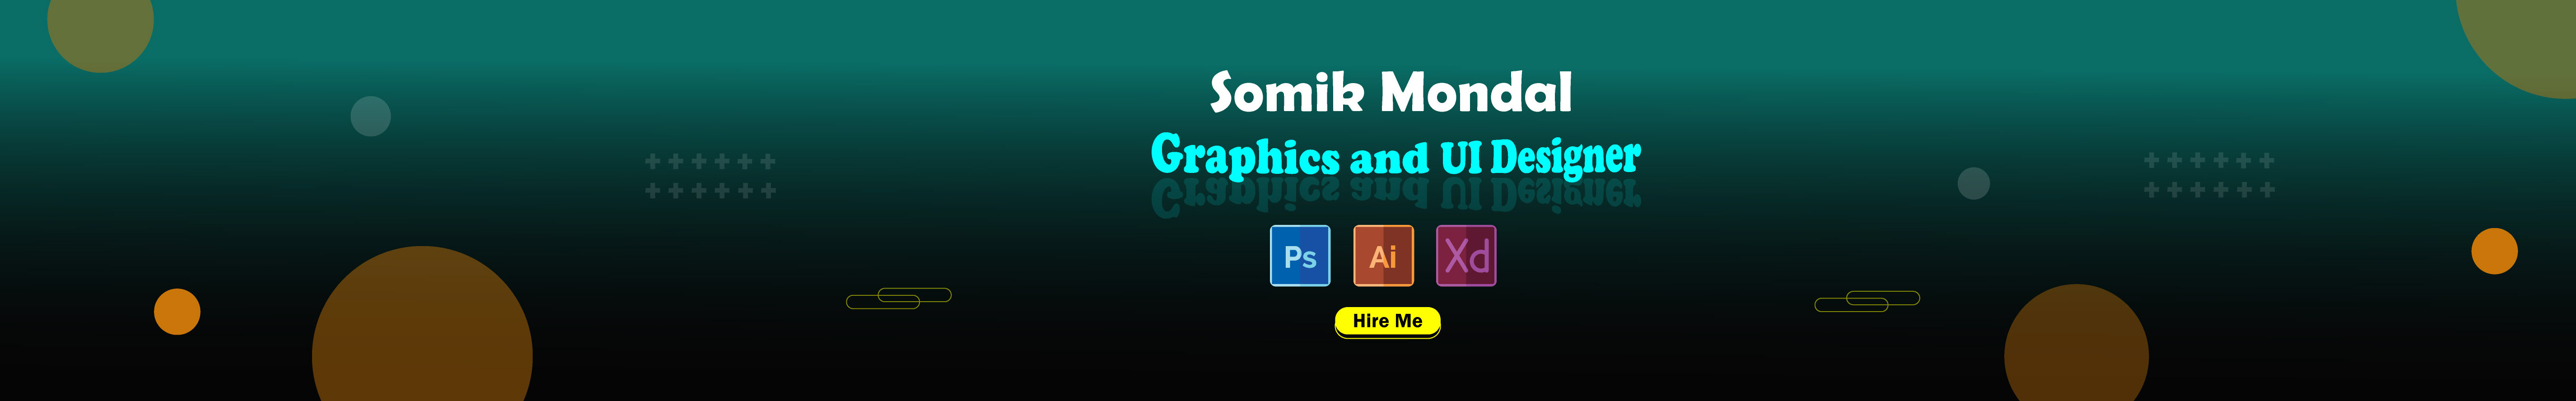 Banner de perfil de Somik Mondal